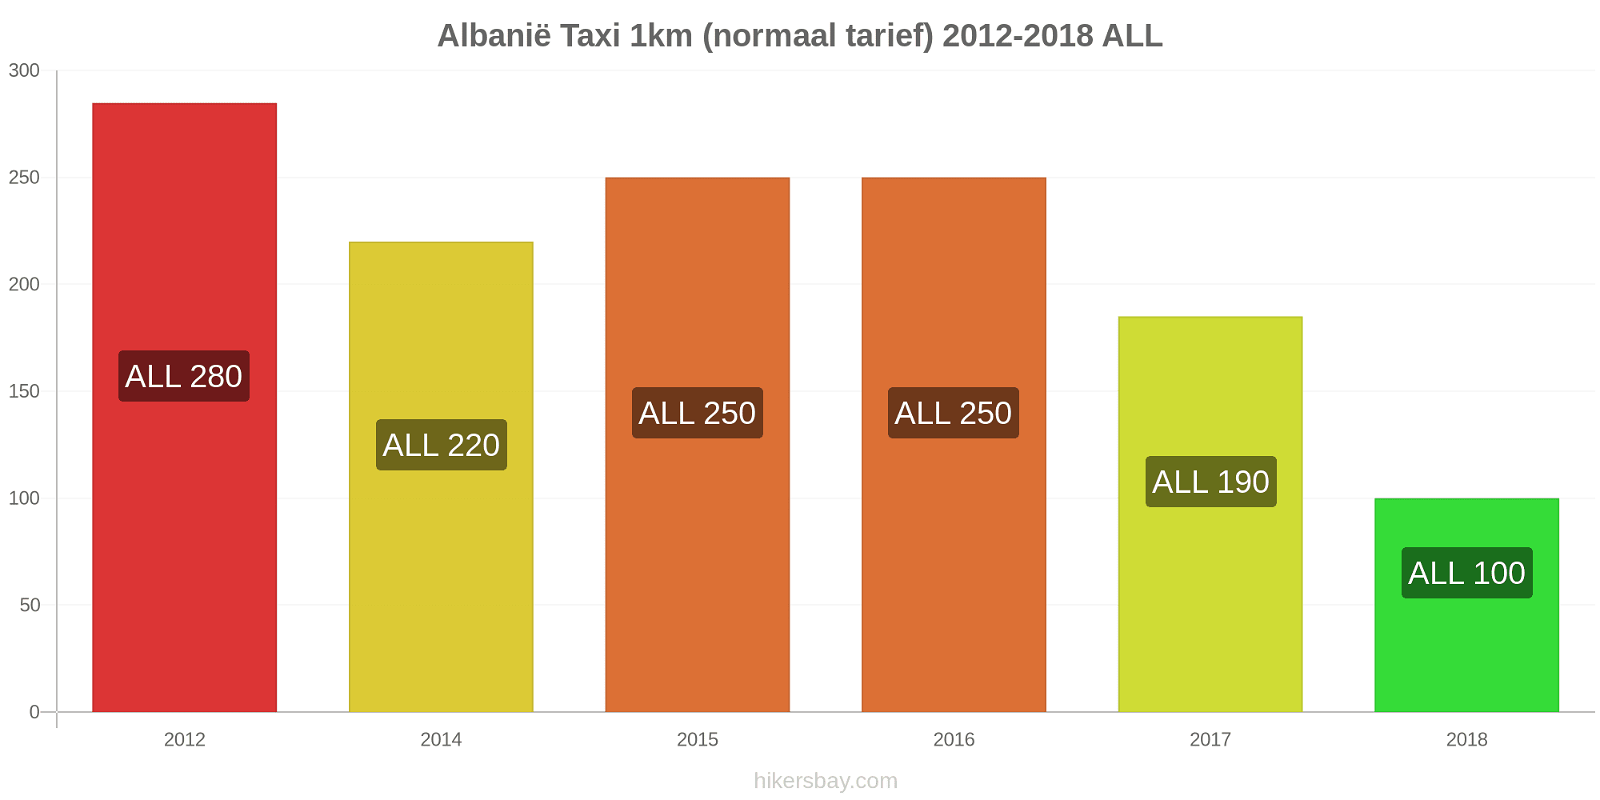 Albanië prijswijzigingen Taxi 1km (normaal tarief) hikersbay.com